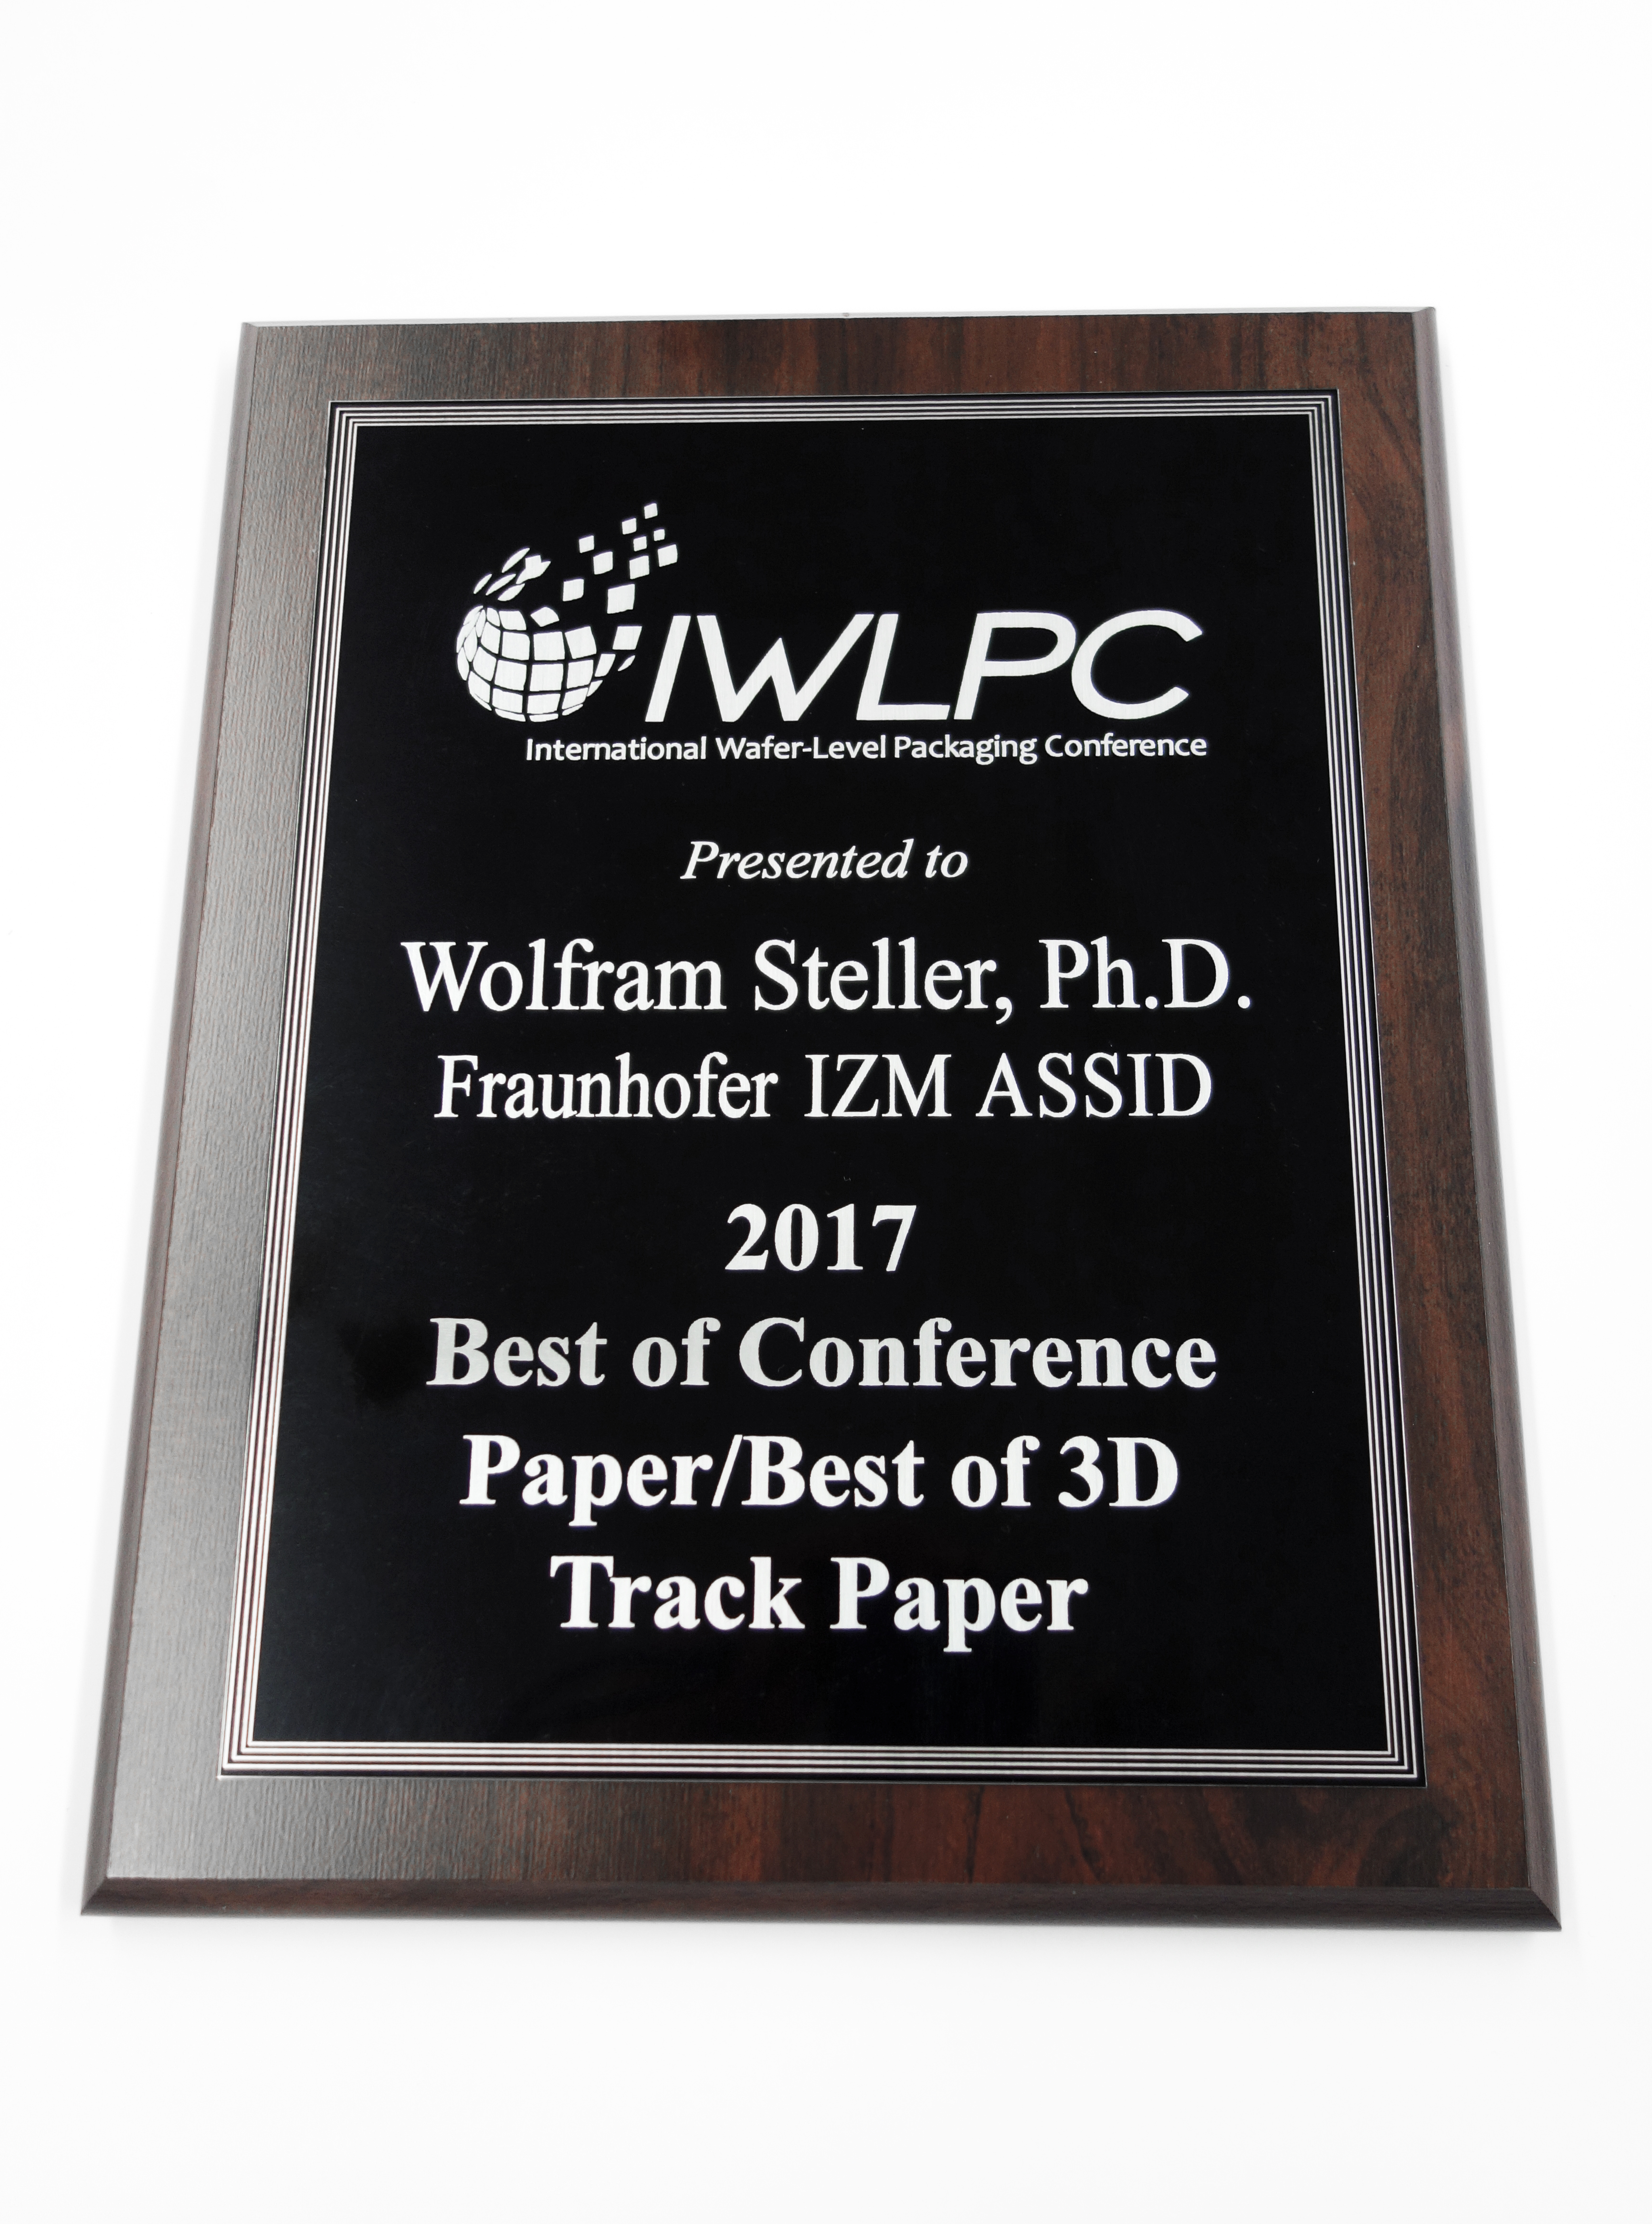 Wolfram Steller and team winning the IPWLC’s Best Paper Awards